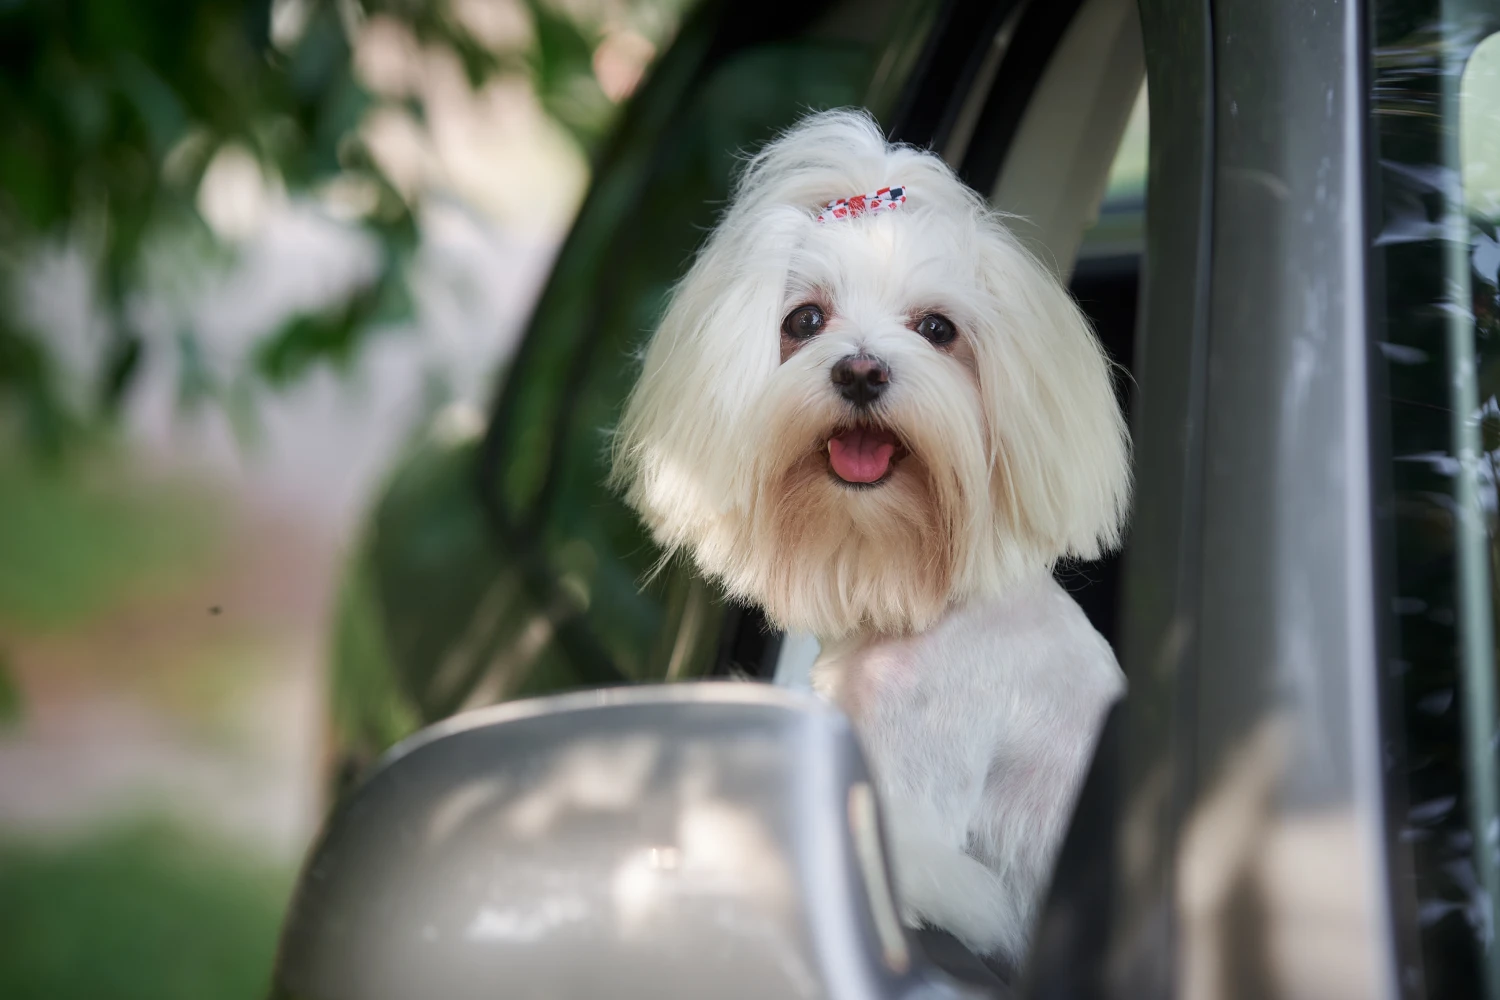 Kia Optima Dog Car Seat for Maltese